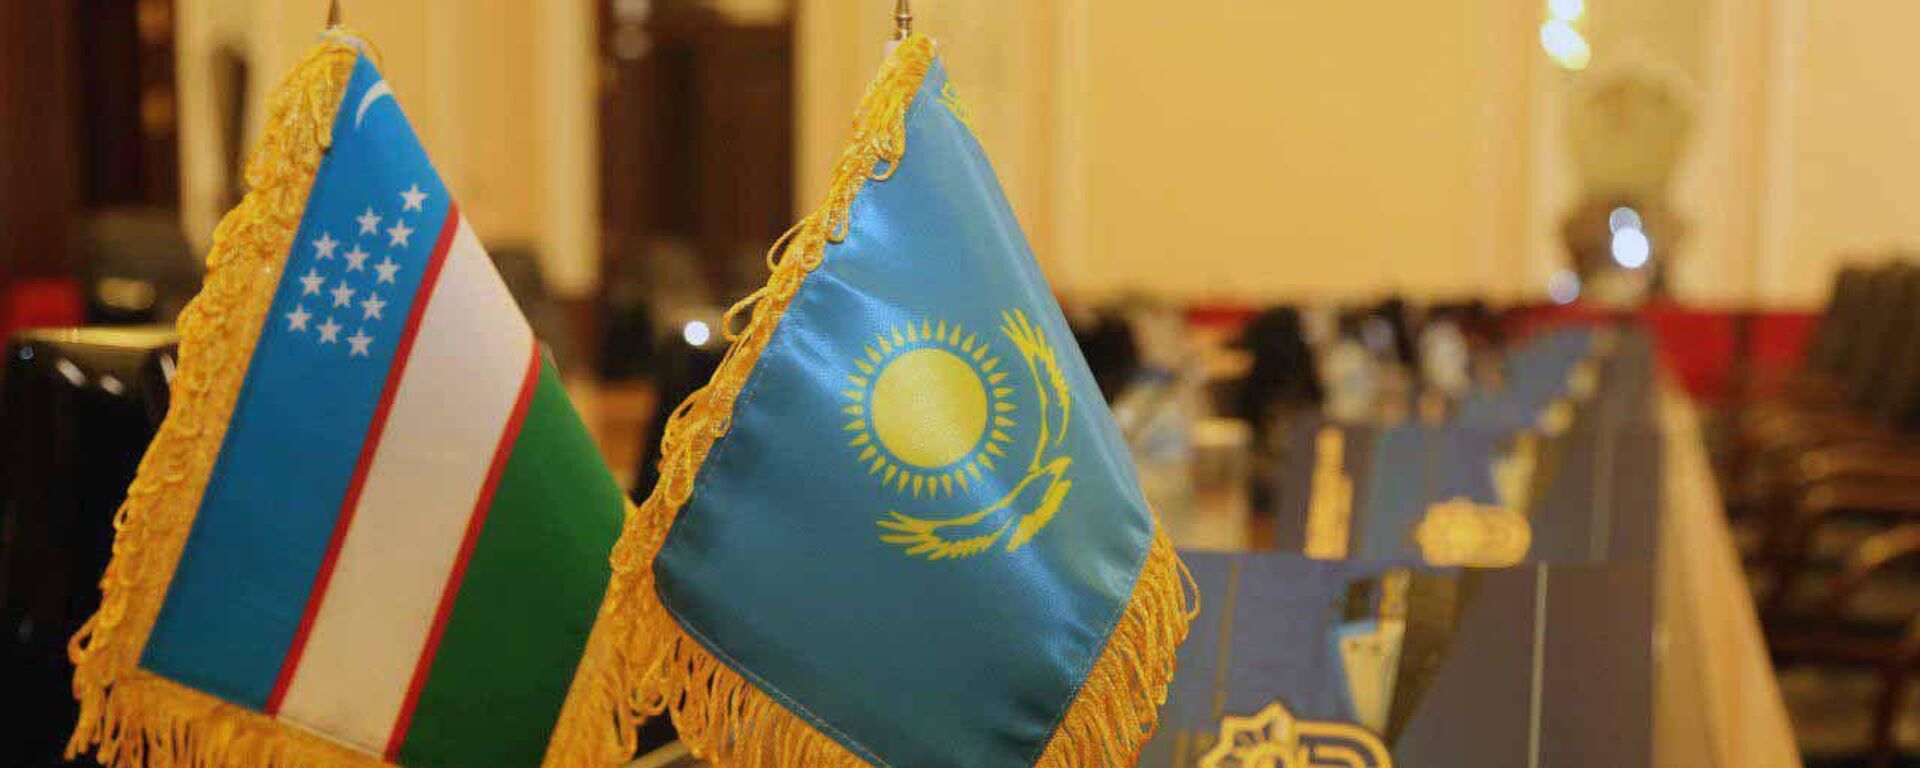 Казахстан и Узбекистан обсудили взаимодействие в железнодорожной сфере - Sputnik Узбекистан, 1920, 28.07.2021